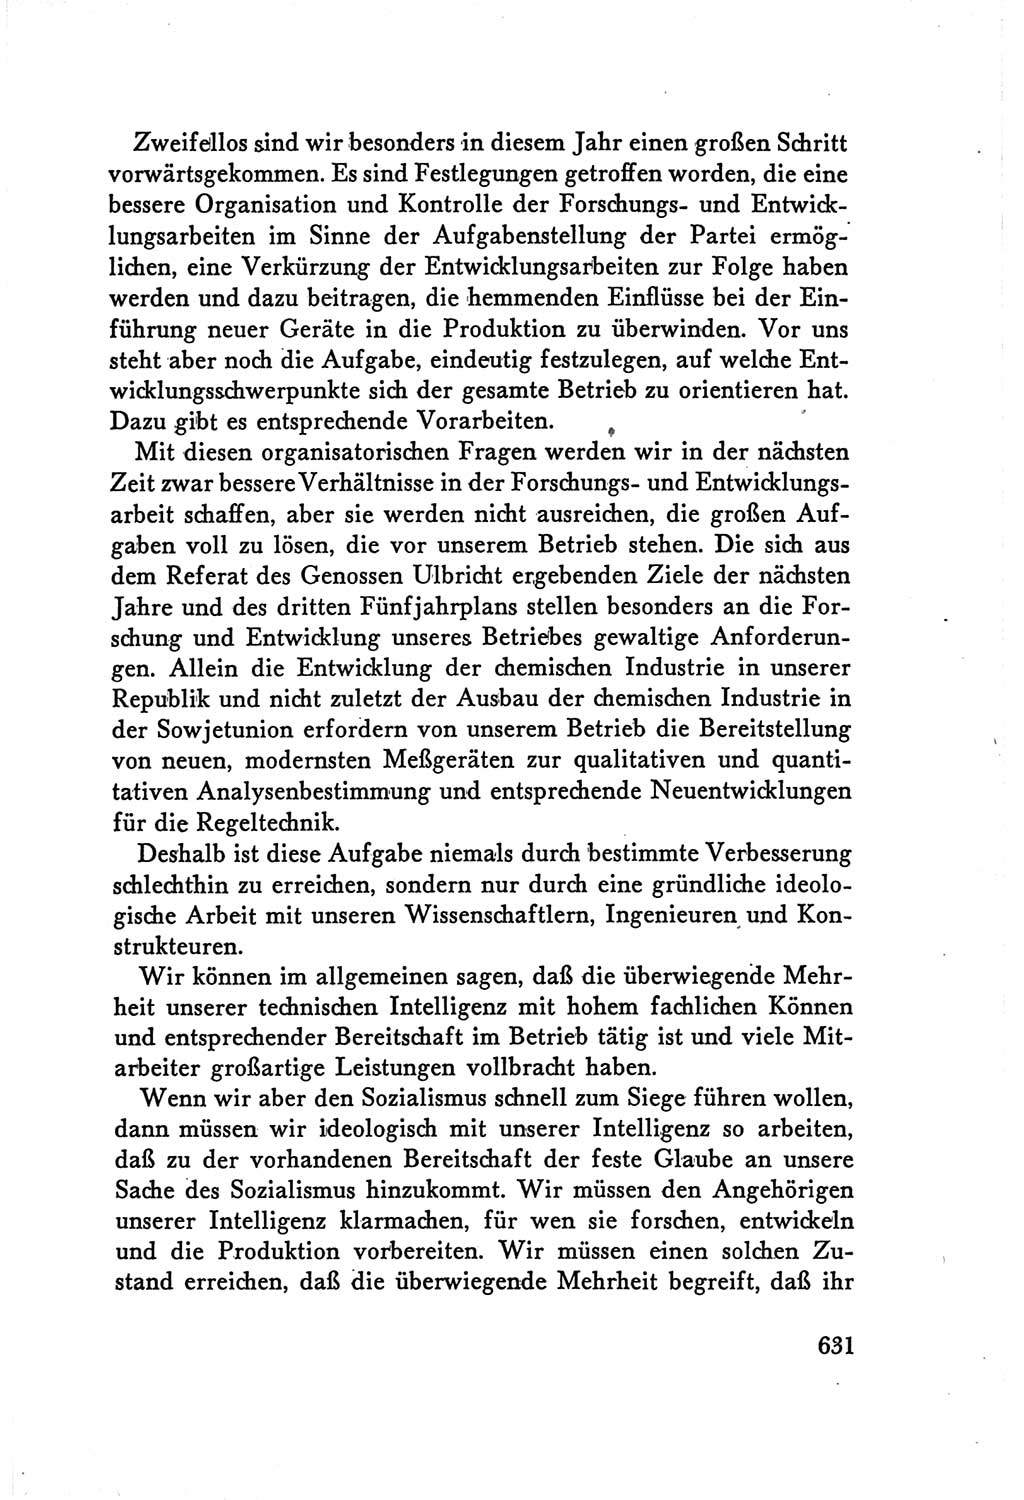 Protokoll der Verhandlungen des Ⅴ. Parteitages der Sozialistischen Einheitspartei Deutschlands (SED) [Deutsche Demokratische Republik (DDR)] 1958, Seite 631